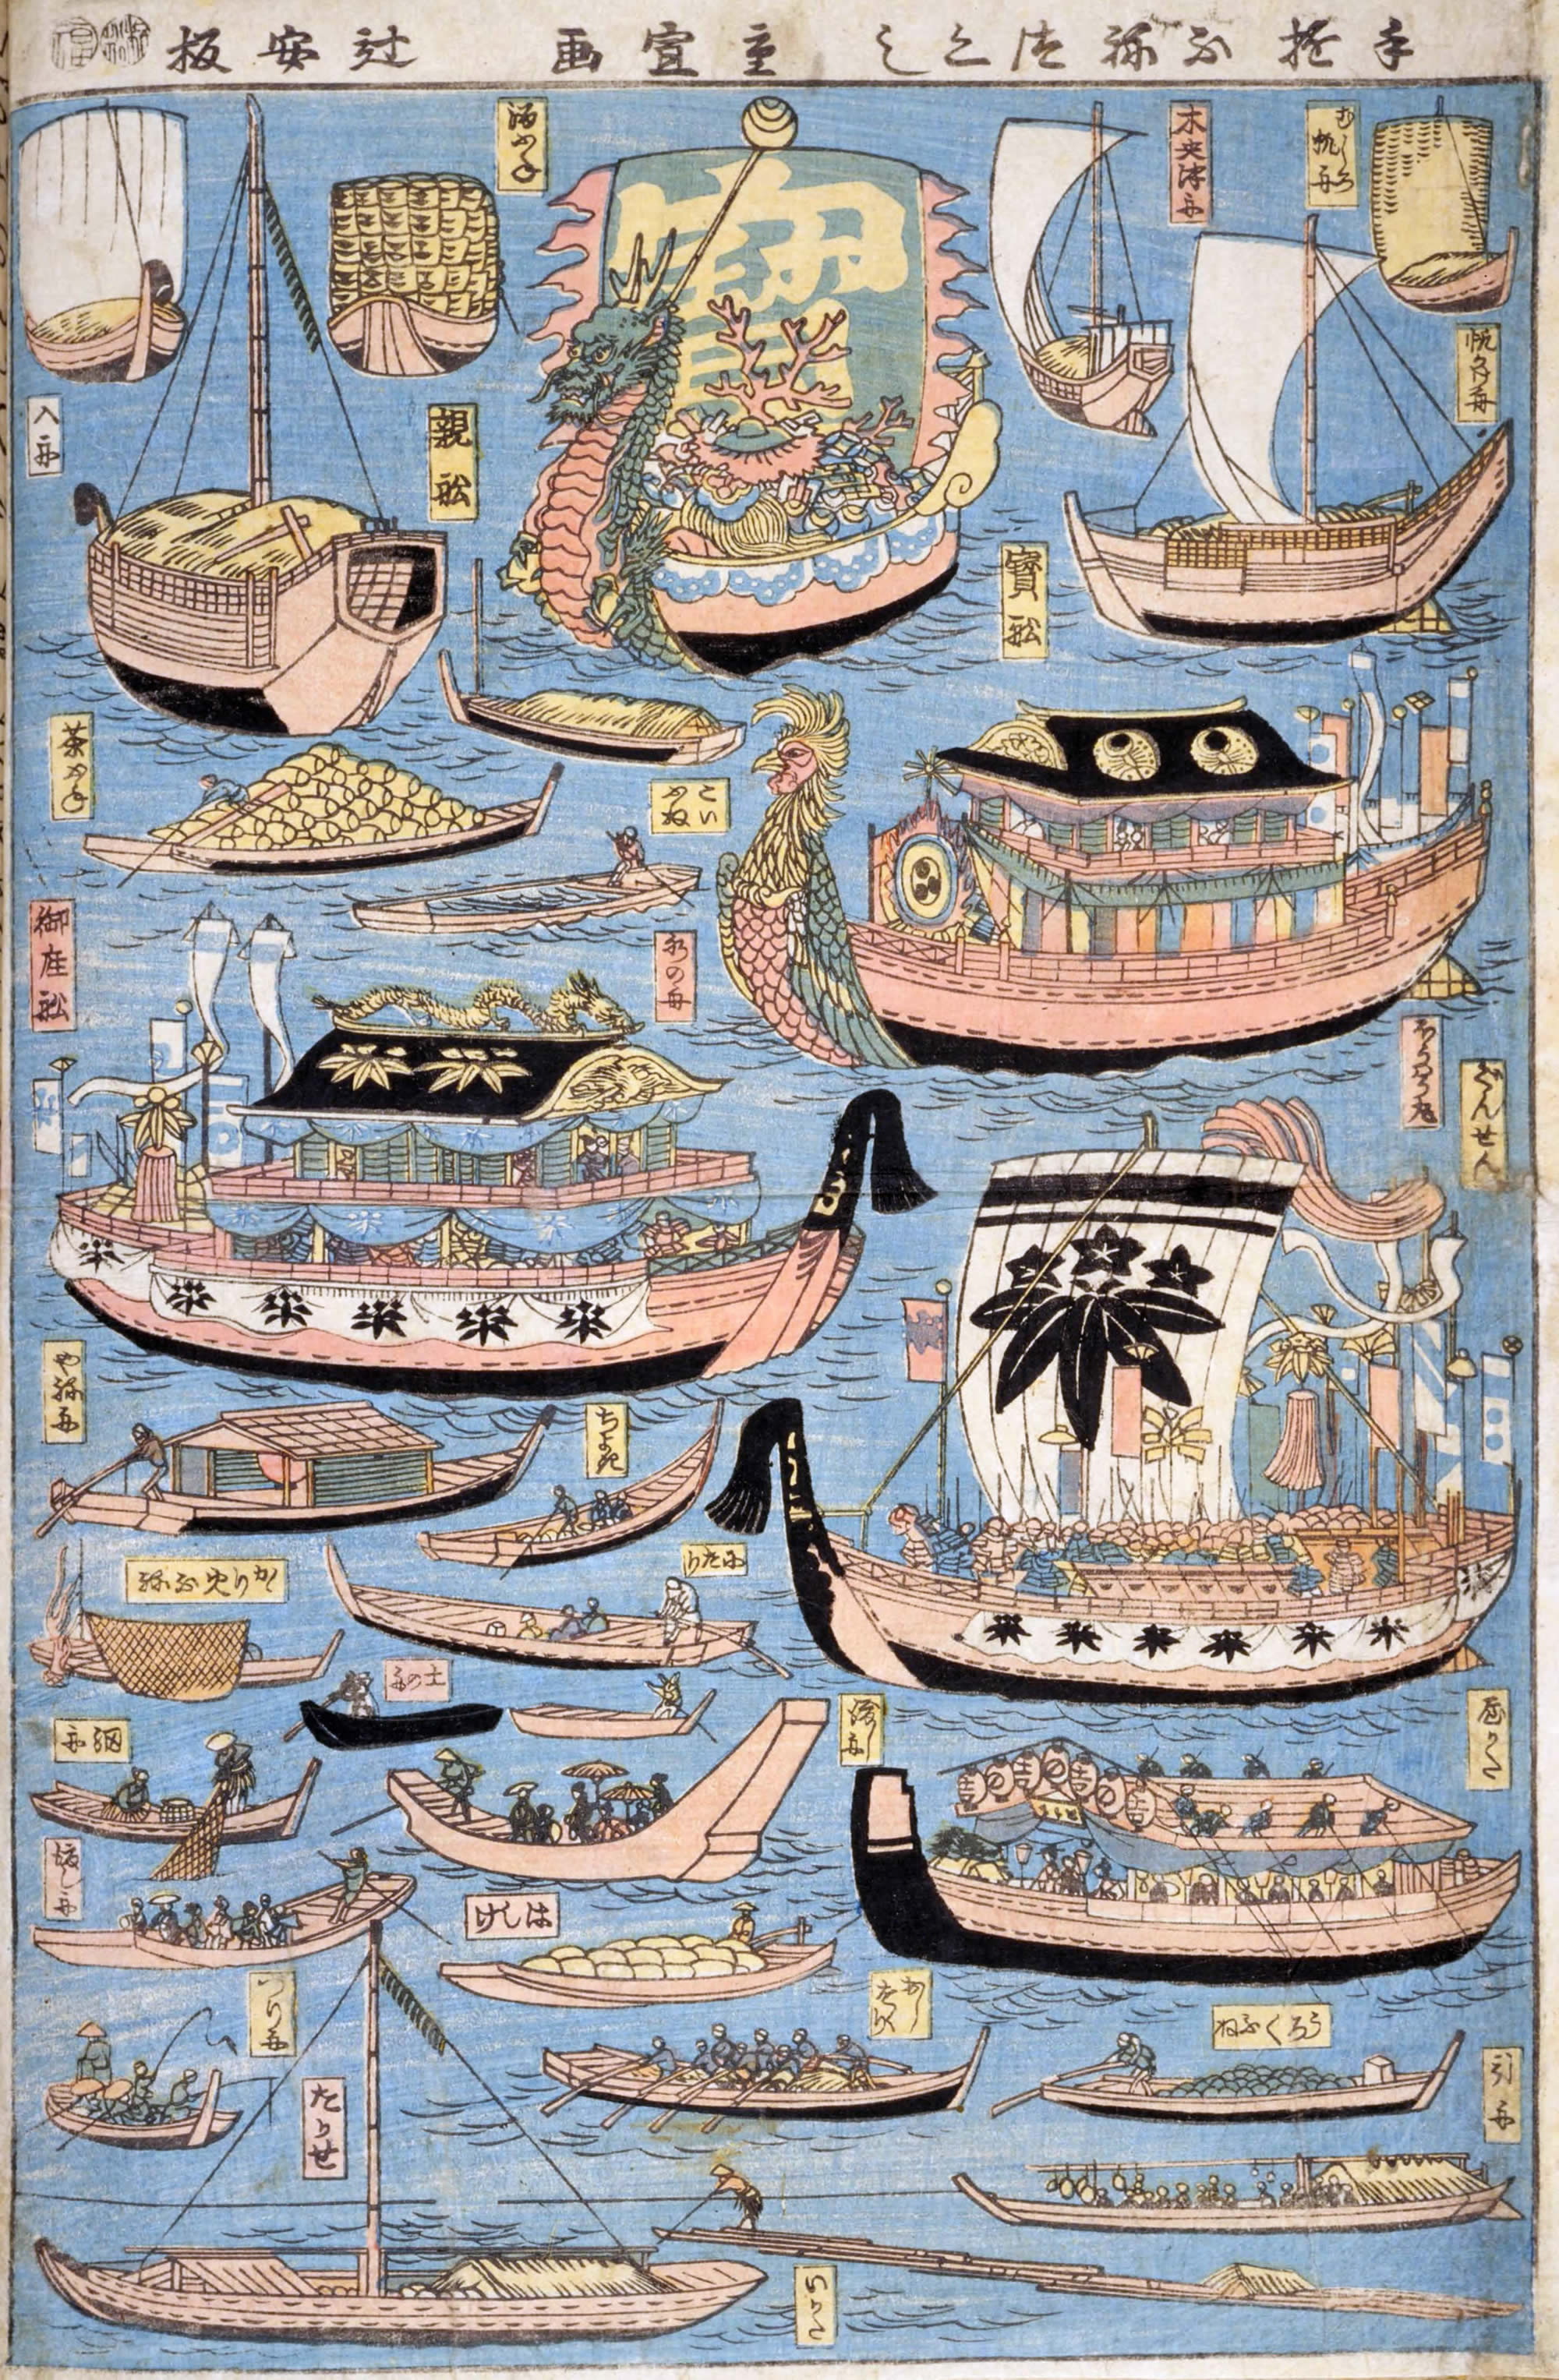 江戸時代の様々な船